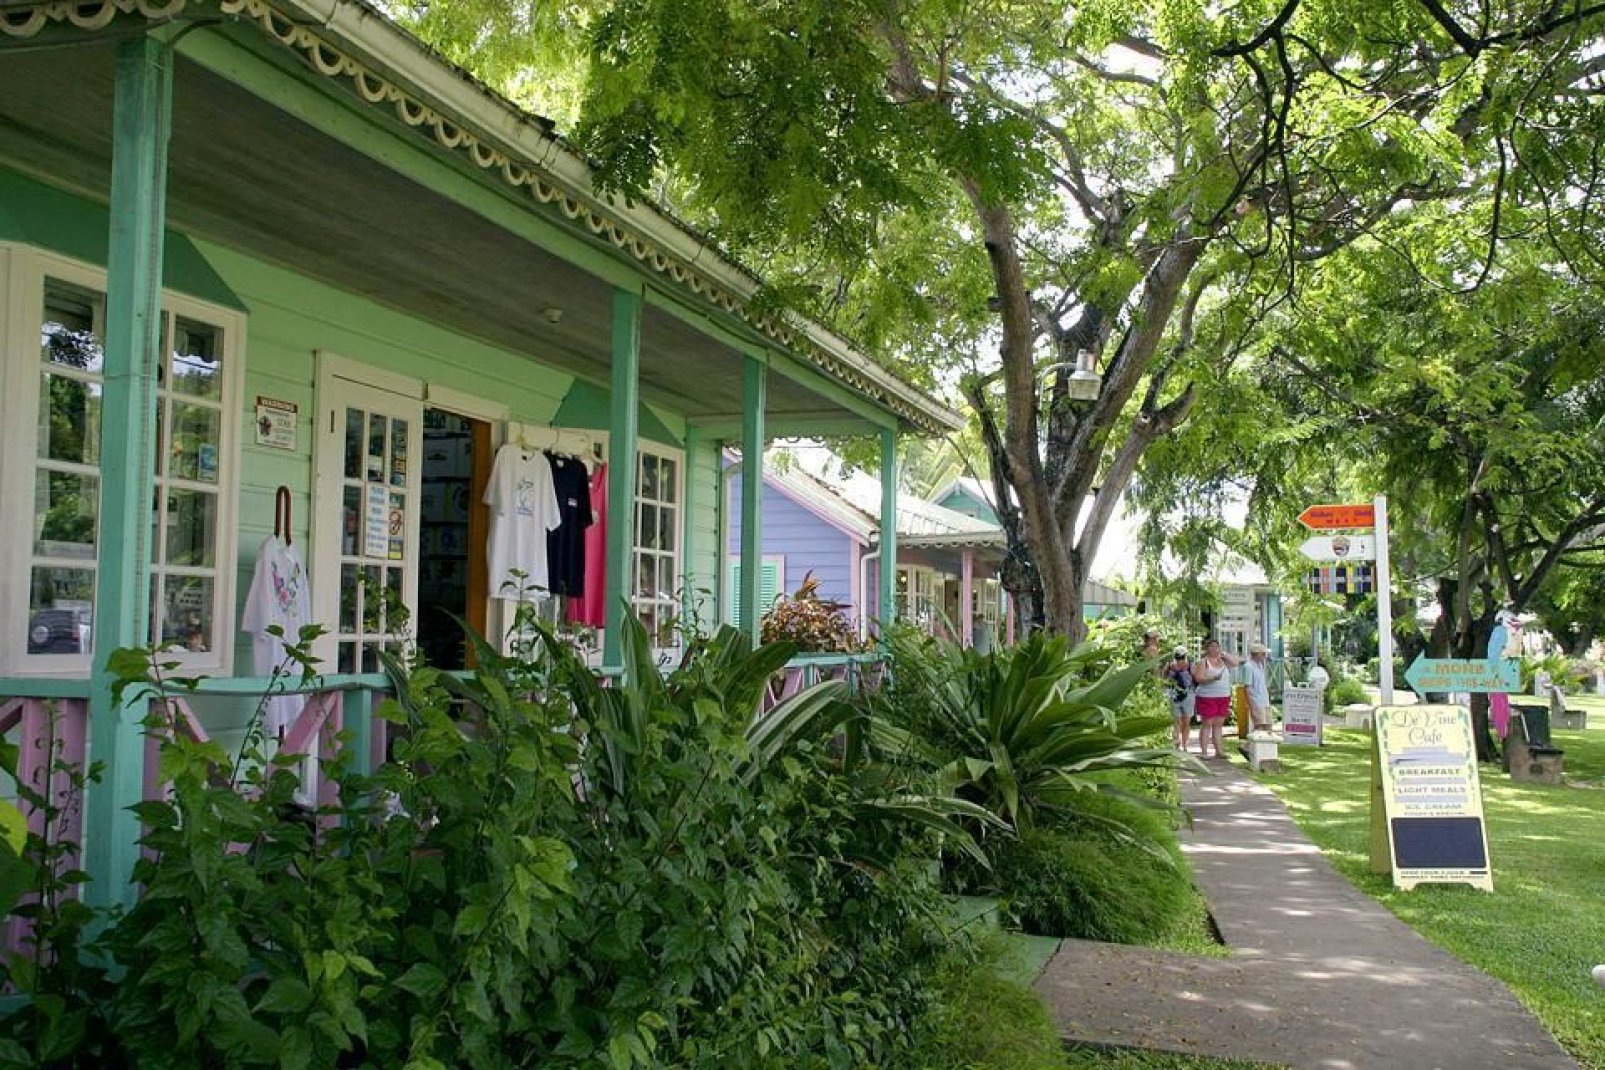 Jedes Jahr wird das berhmte Holetown-Festival als Andenken an die Niederlassung der britischen Siedler auf Barbados veranstaltet.